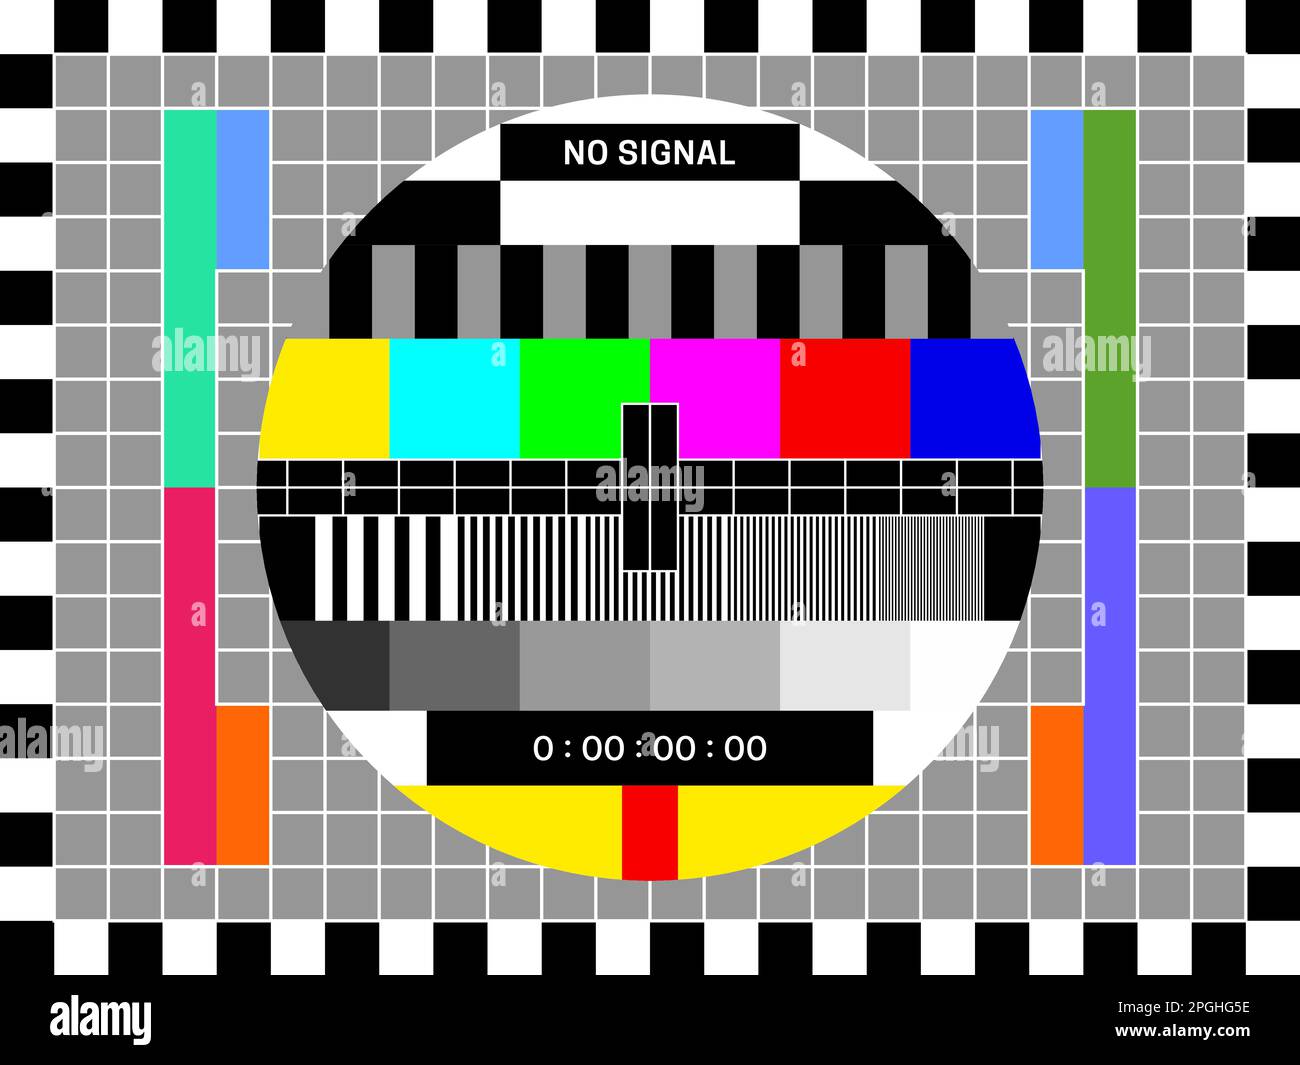 Schermo di prova del segnale TV, test del colore della televisione retrò  del modello di trasmissione, sfondo del vecchio video vettoriale.  Visualizzazione del terminale TV con griglia di prova dello schermo,  immagine